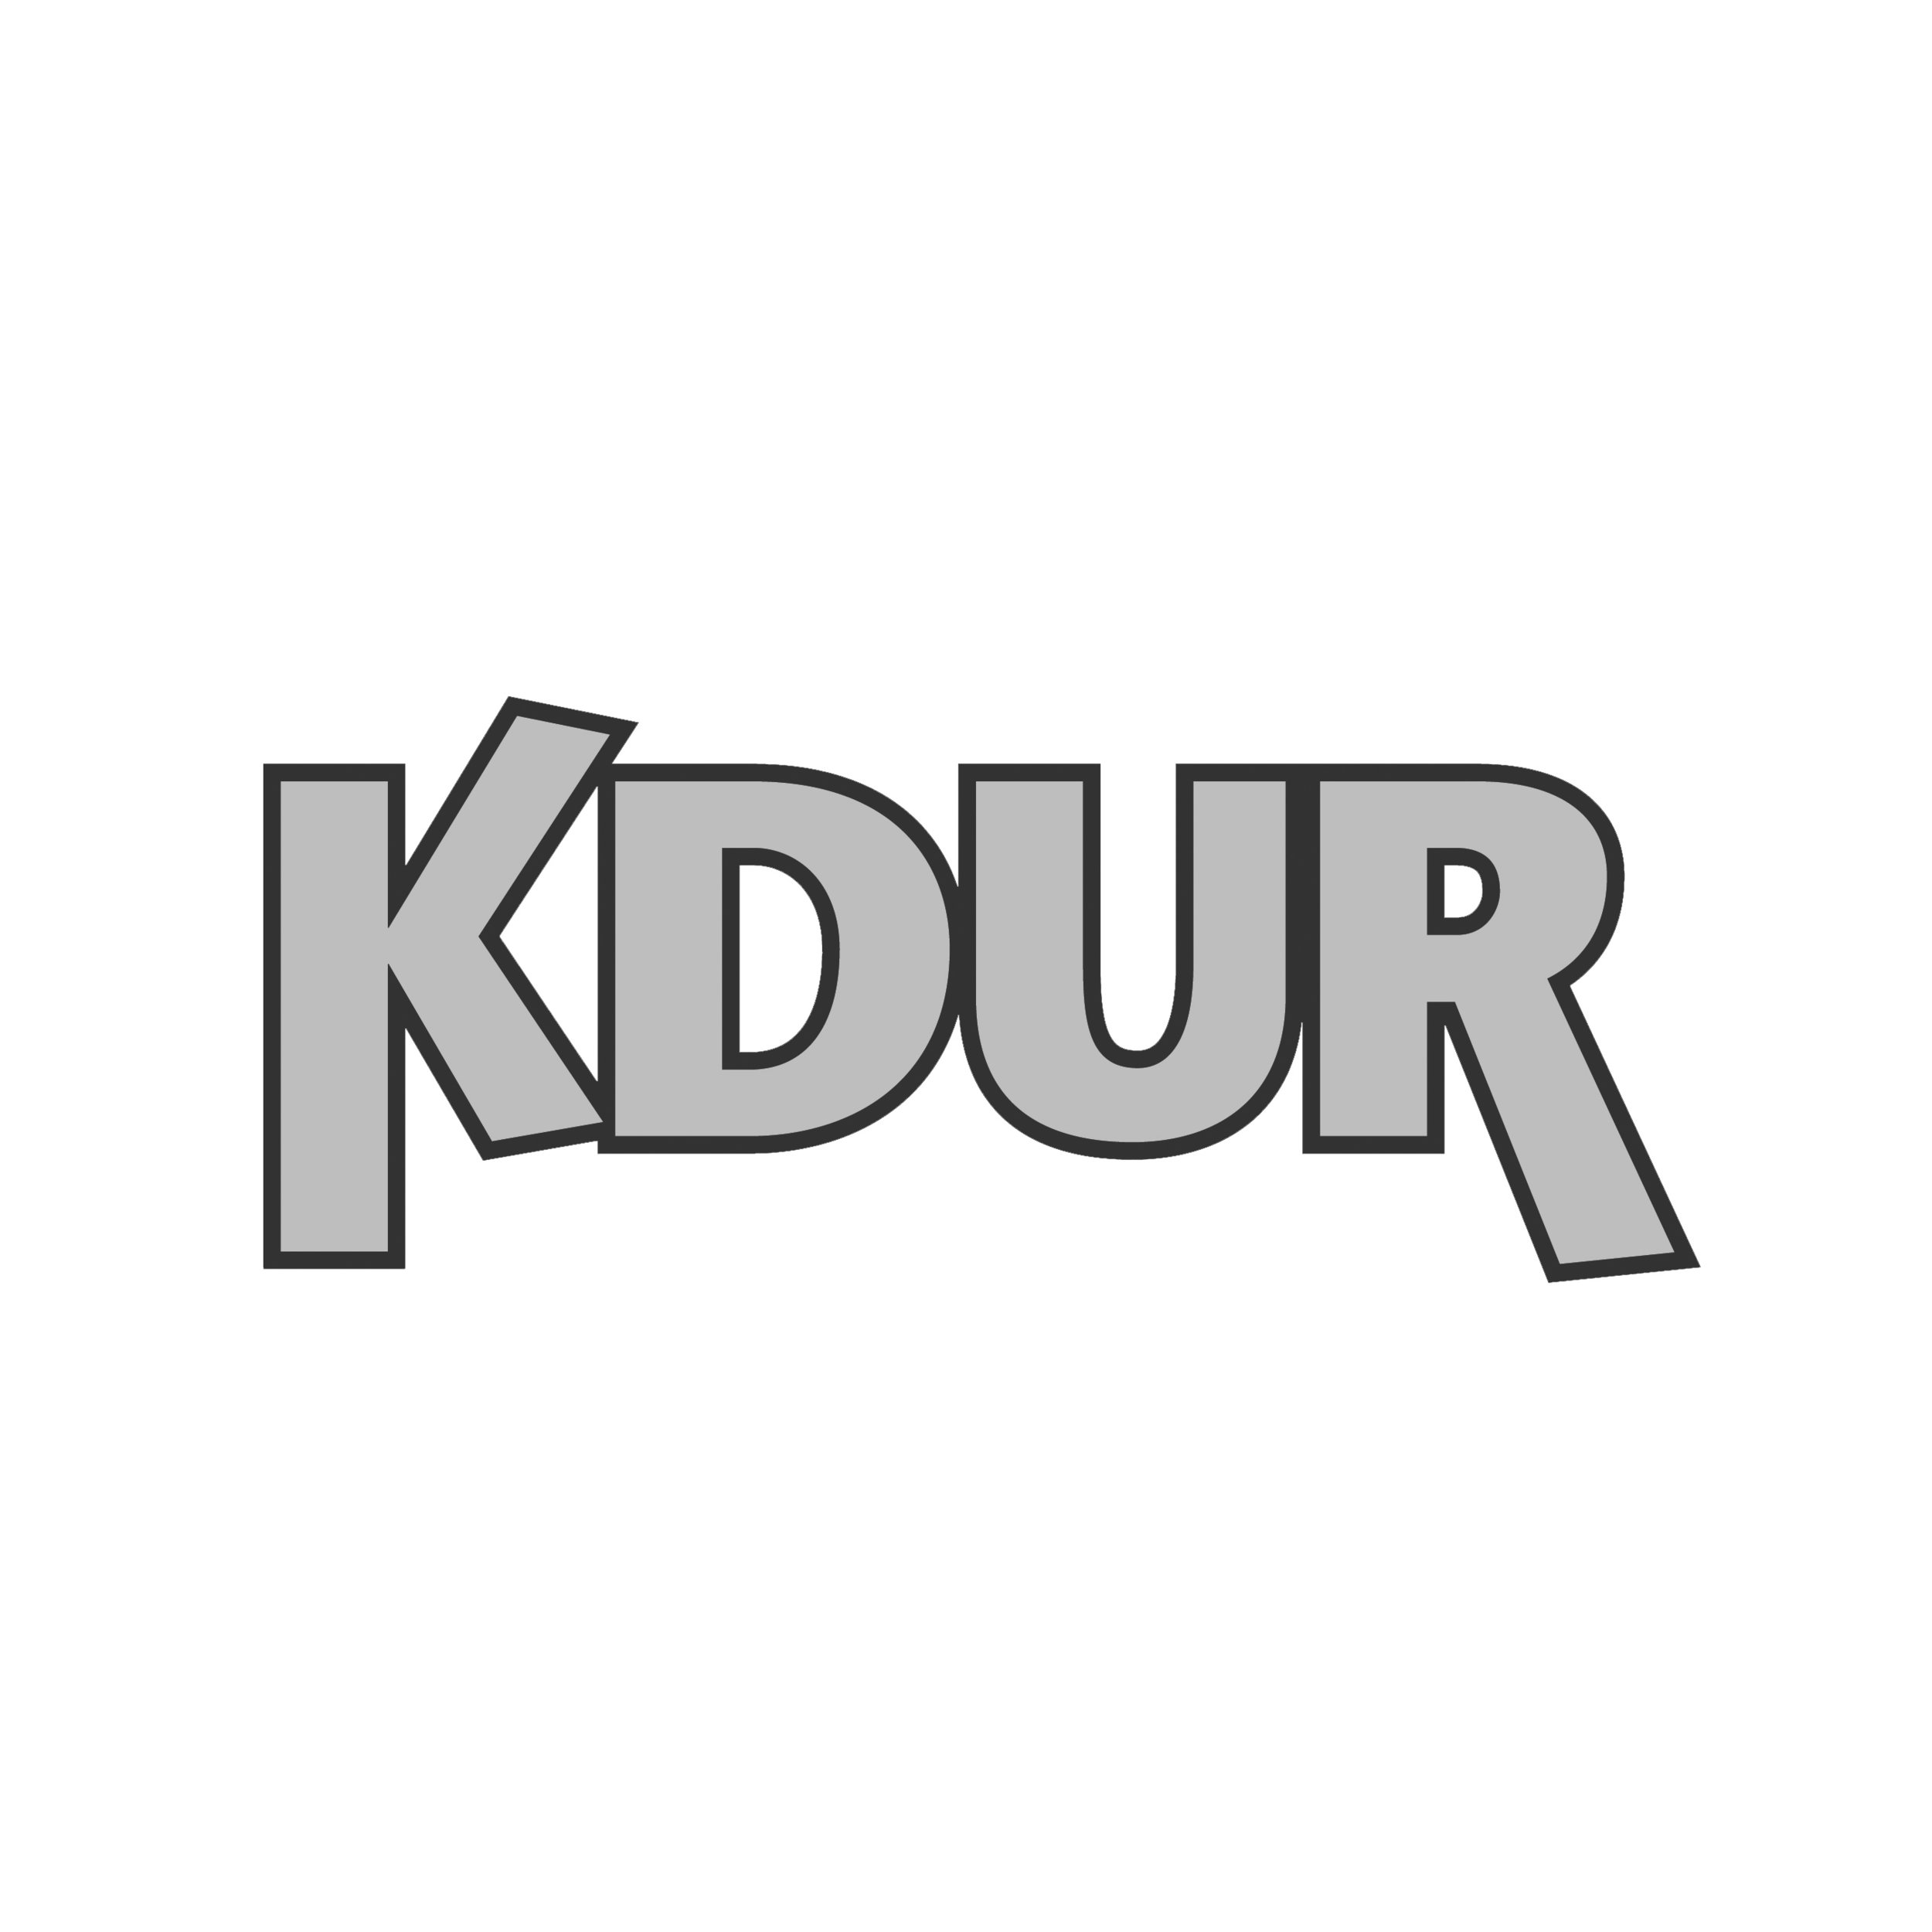 KDUR_logo_84.jpg